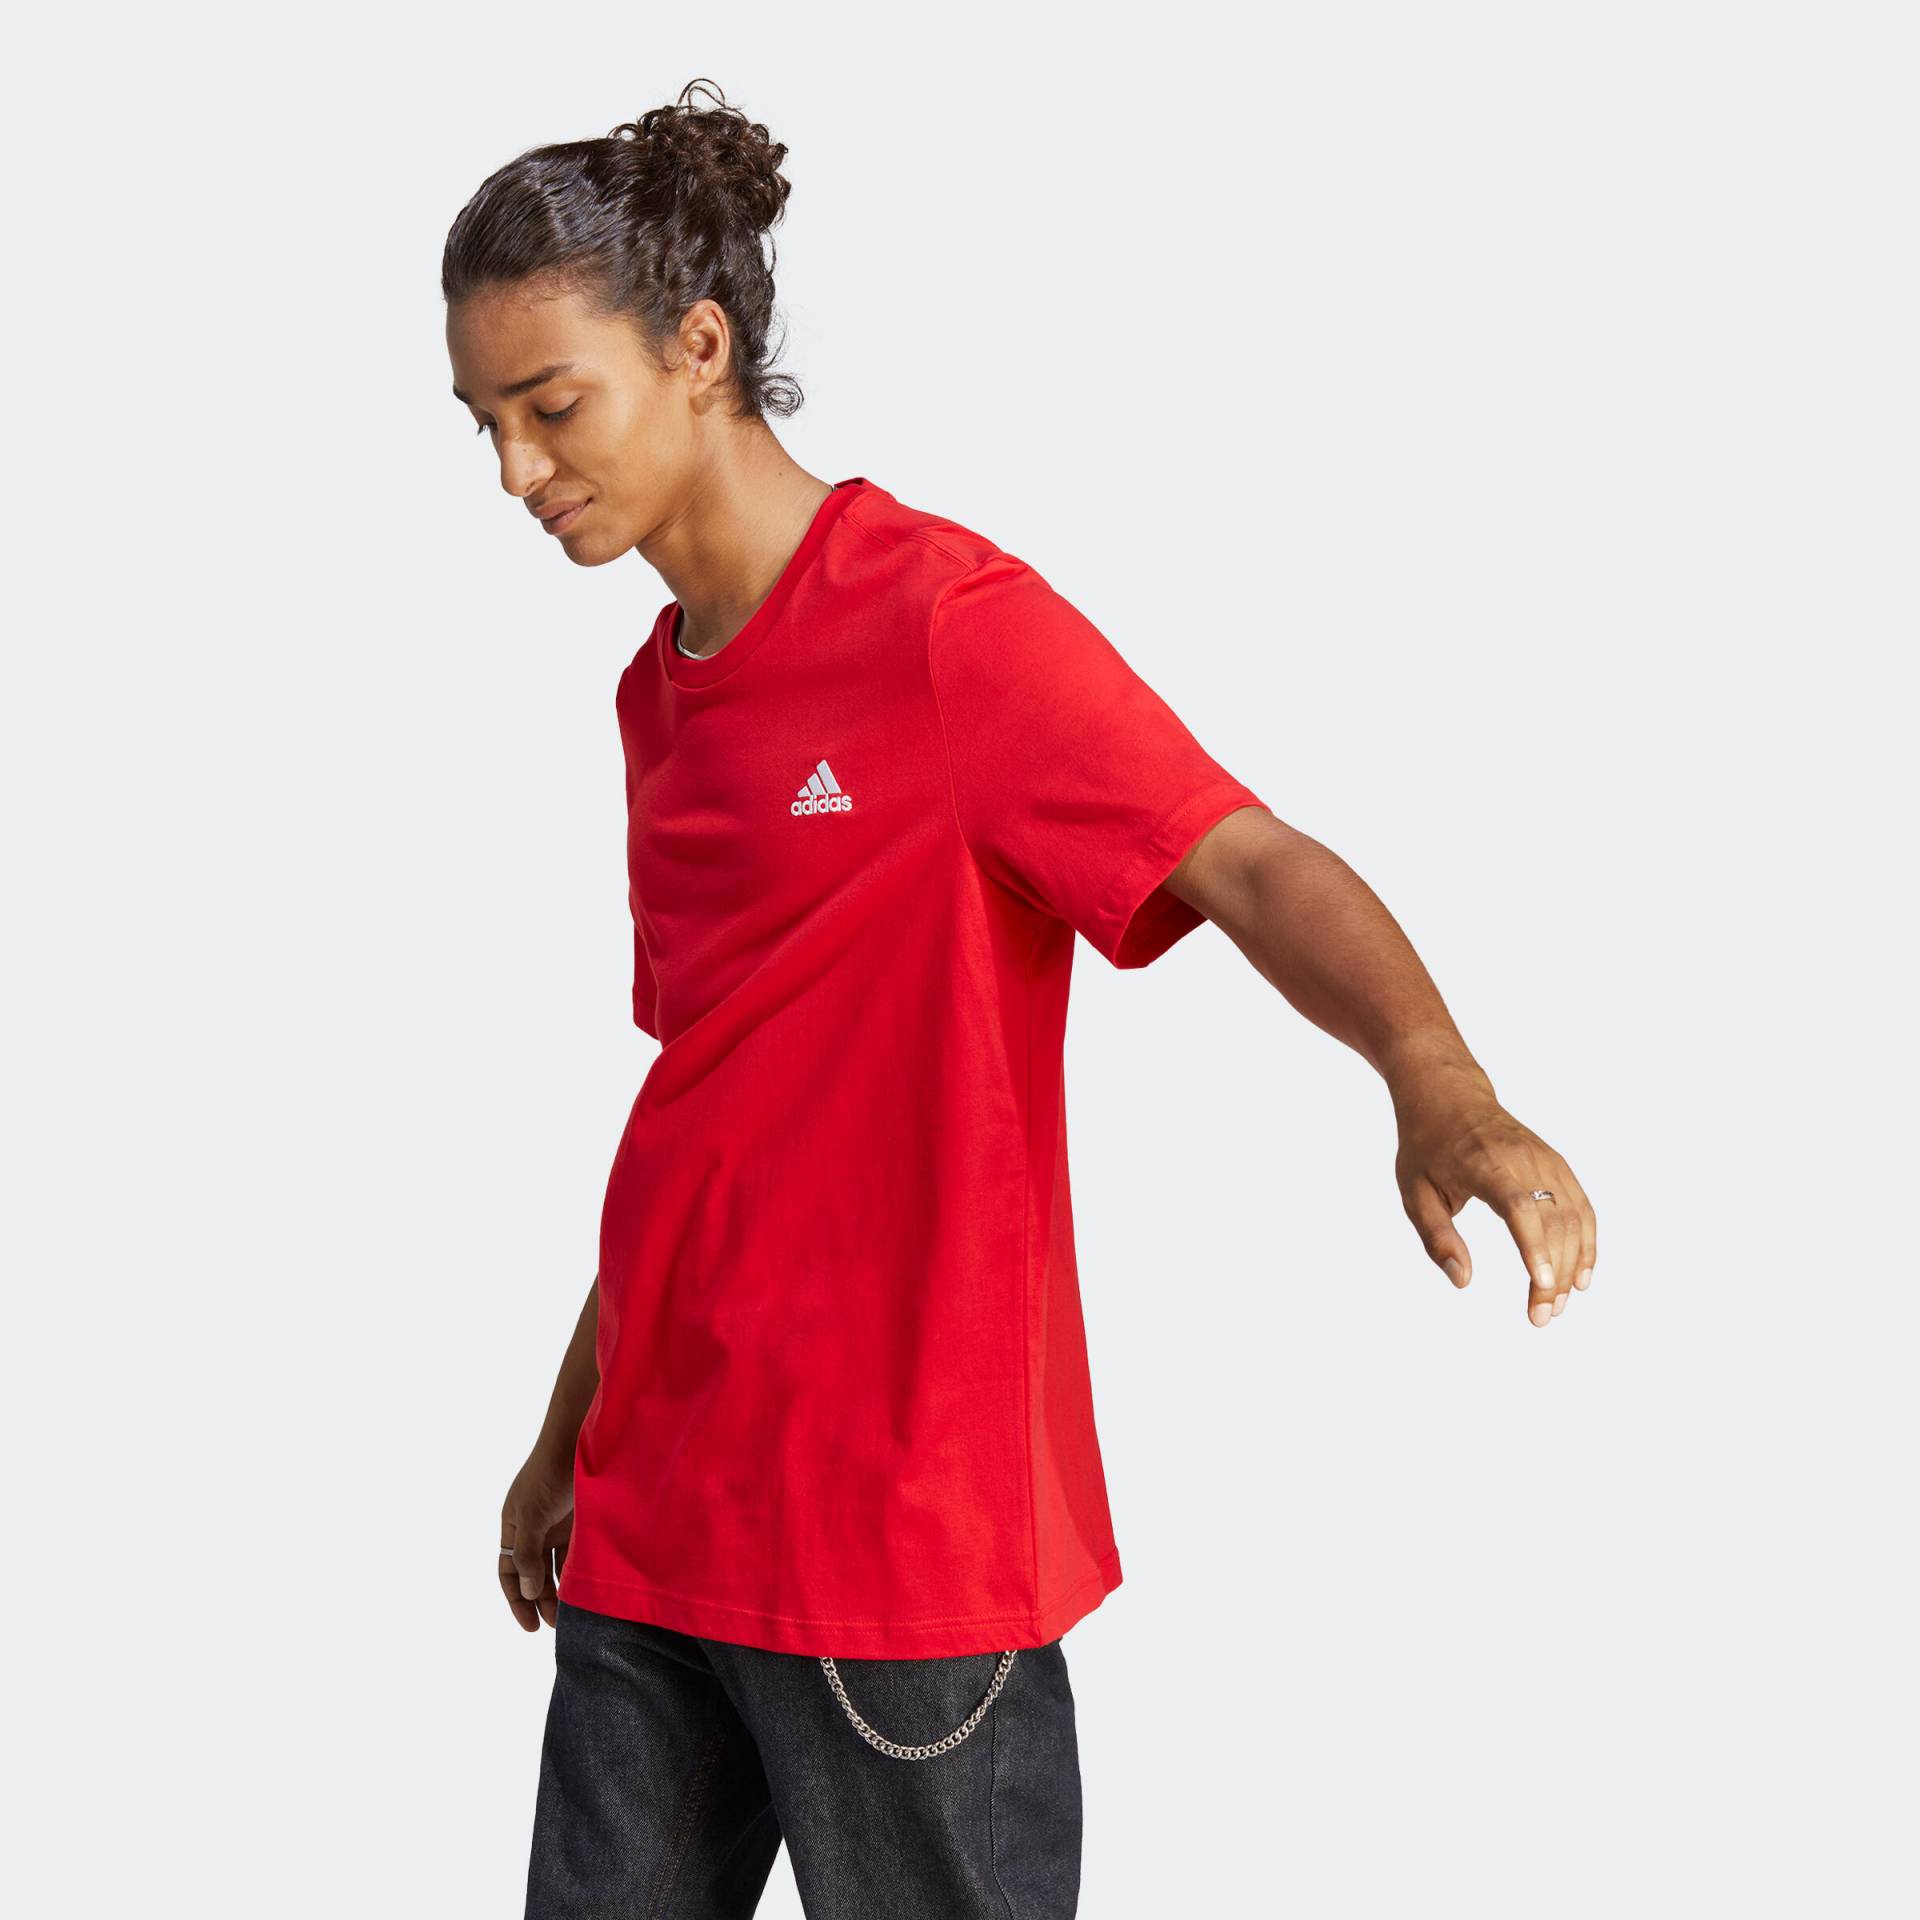 ADIDAS T-Shirt Herren - rot von Adidas